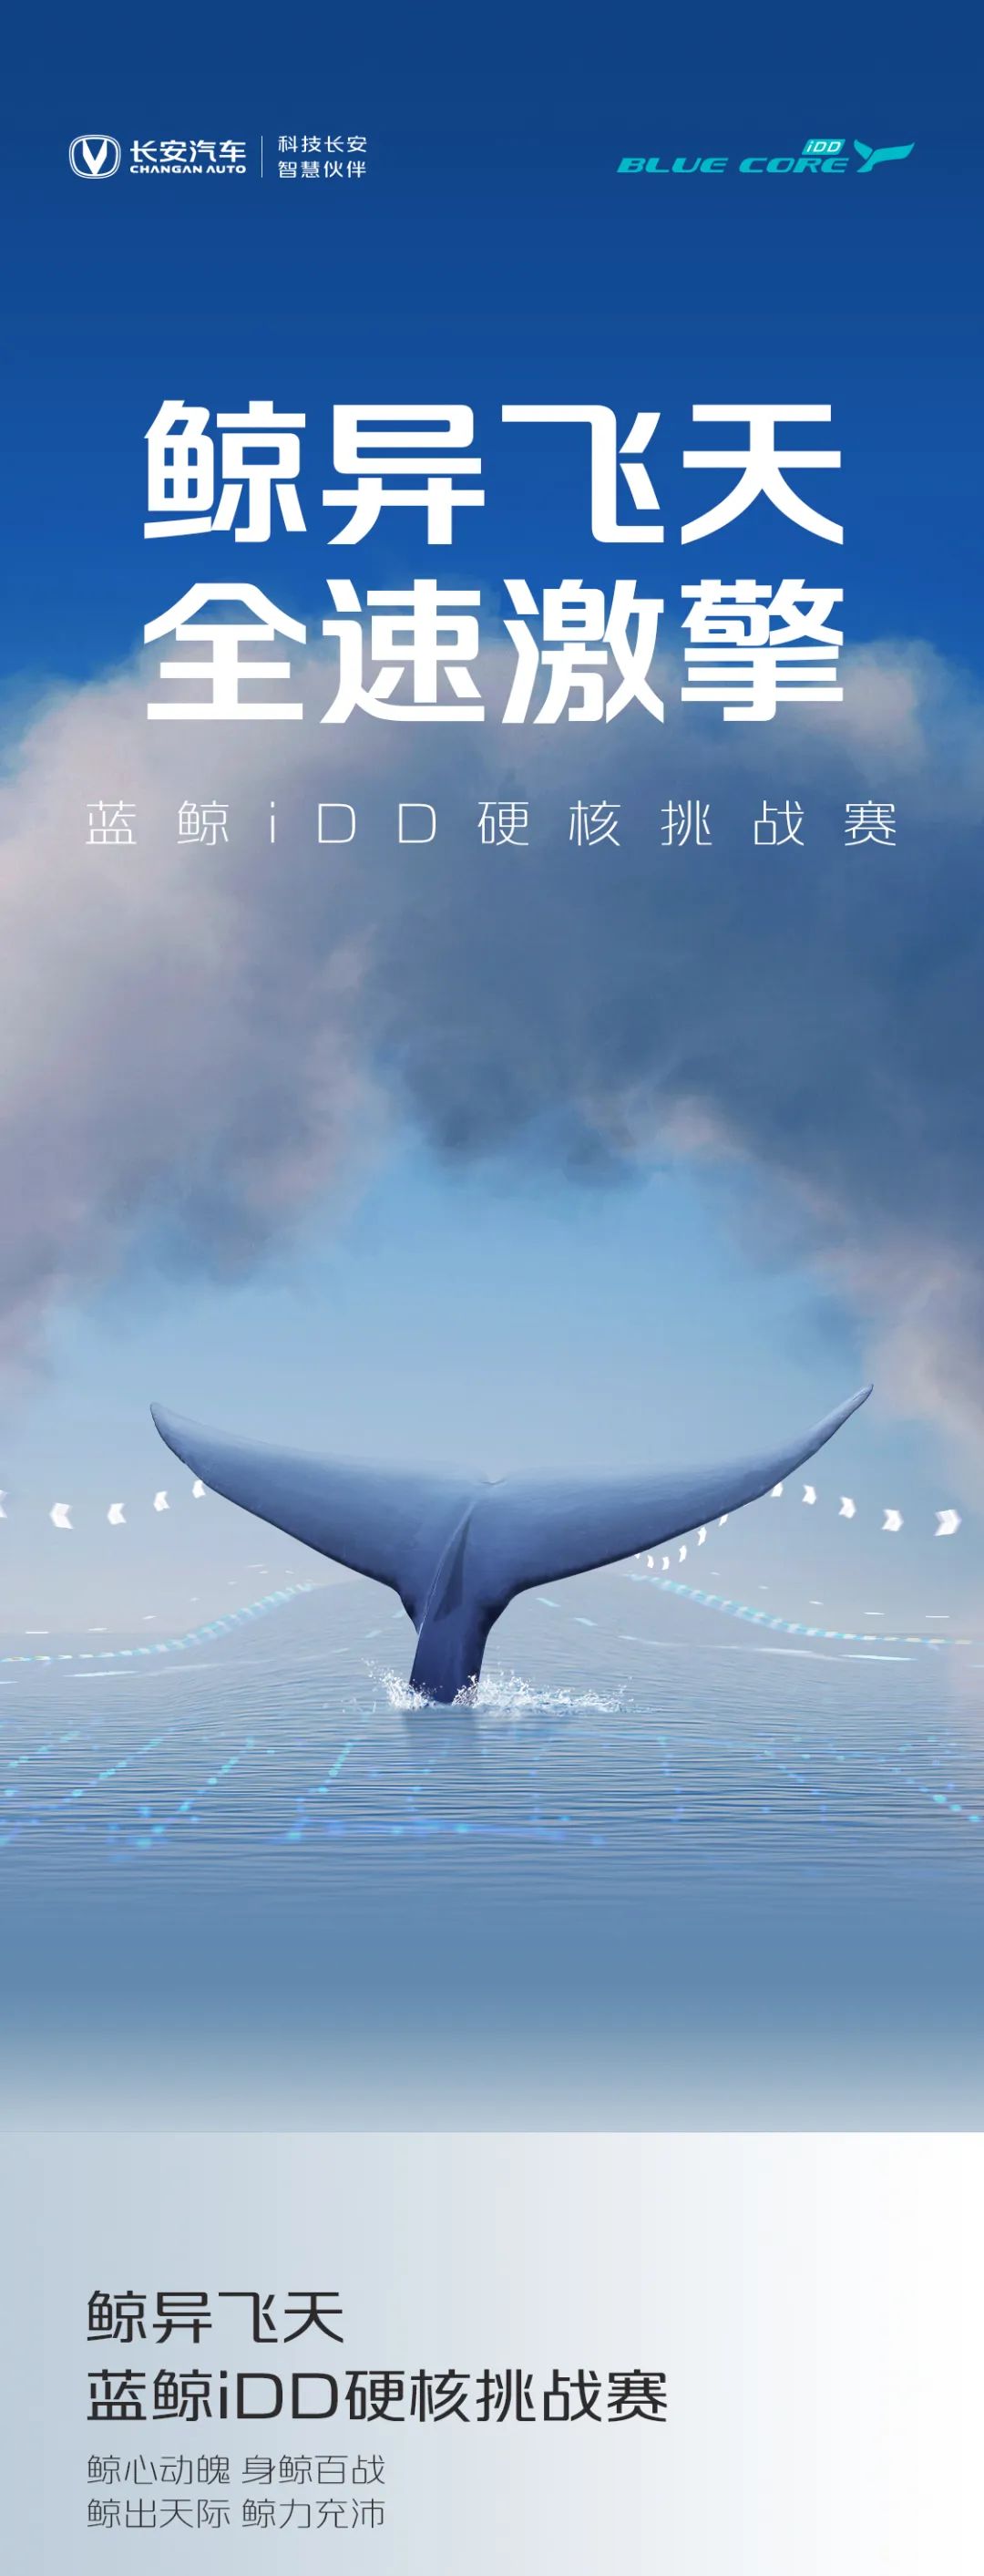 点击查看详细信息<br>标题：蓝鲸iDD硬核挑战赛丨高能无惧挑战 阅读次数：98